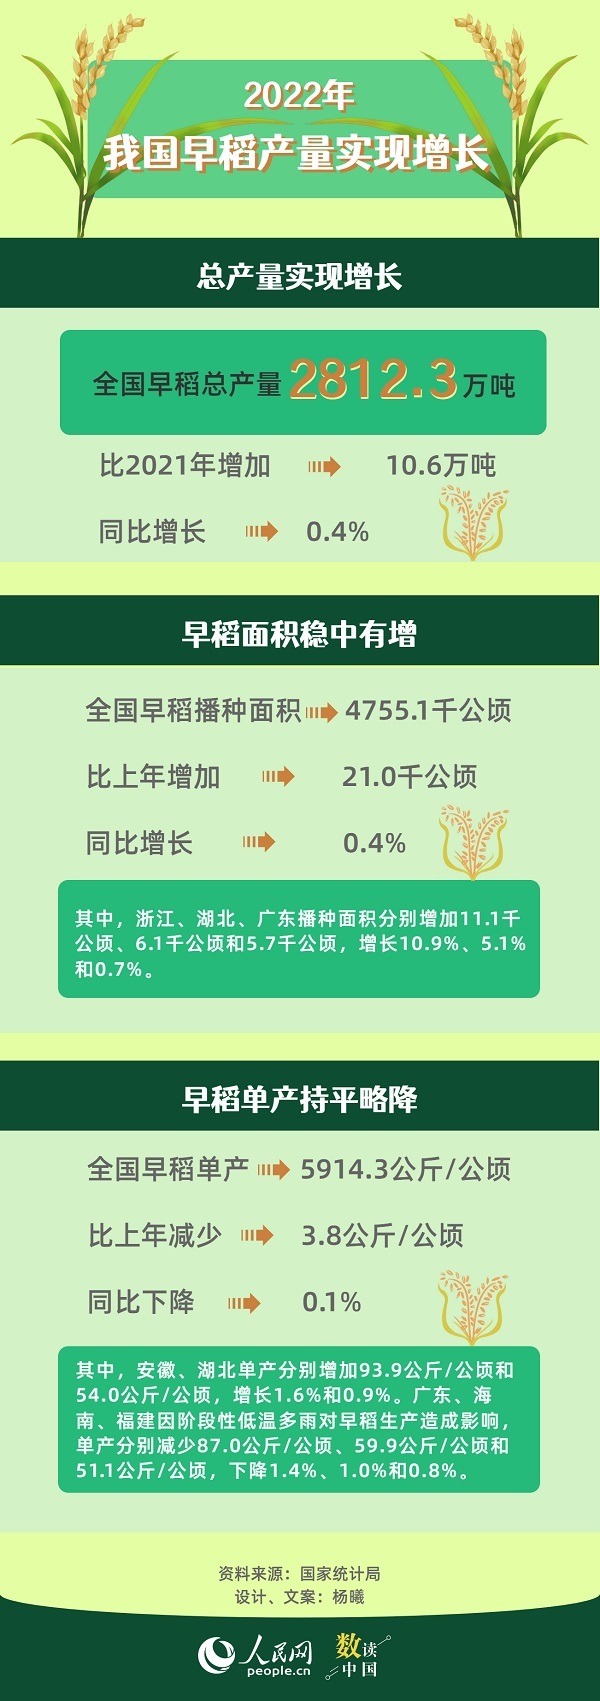 2022年中国早稻产量实现增长 播种面积稳中有增